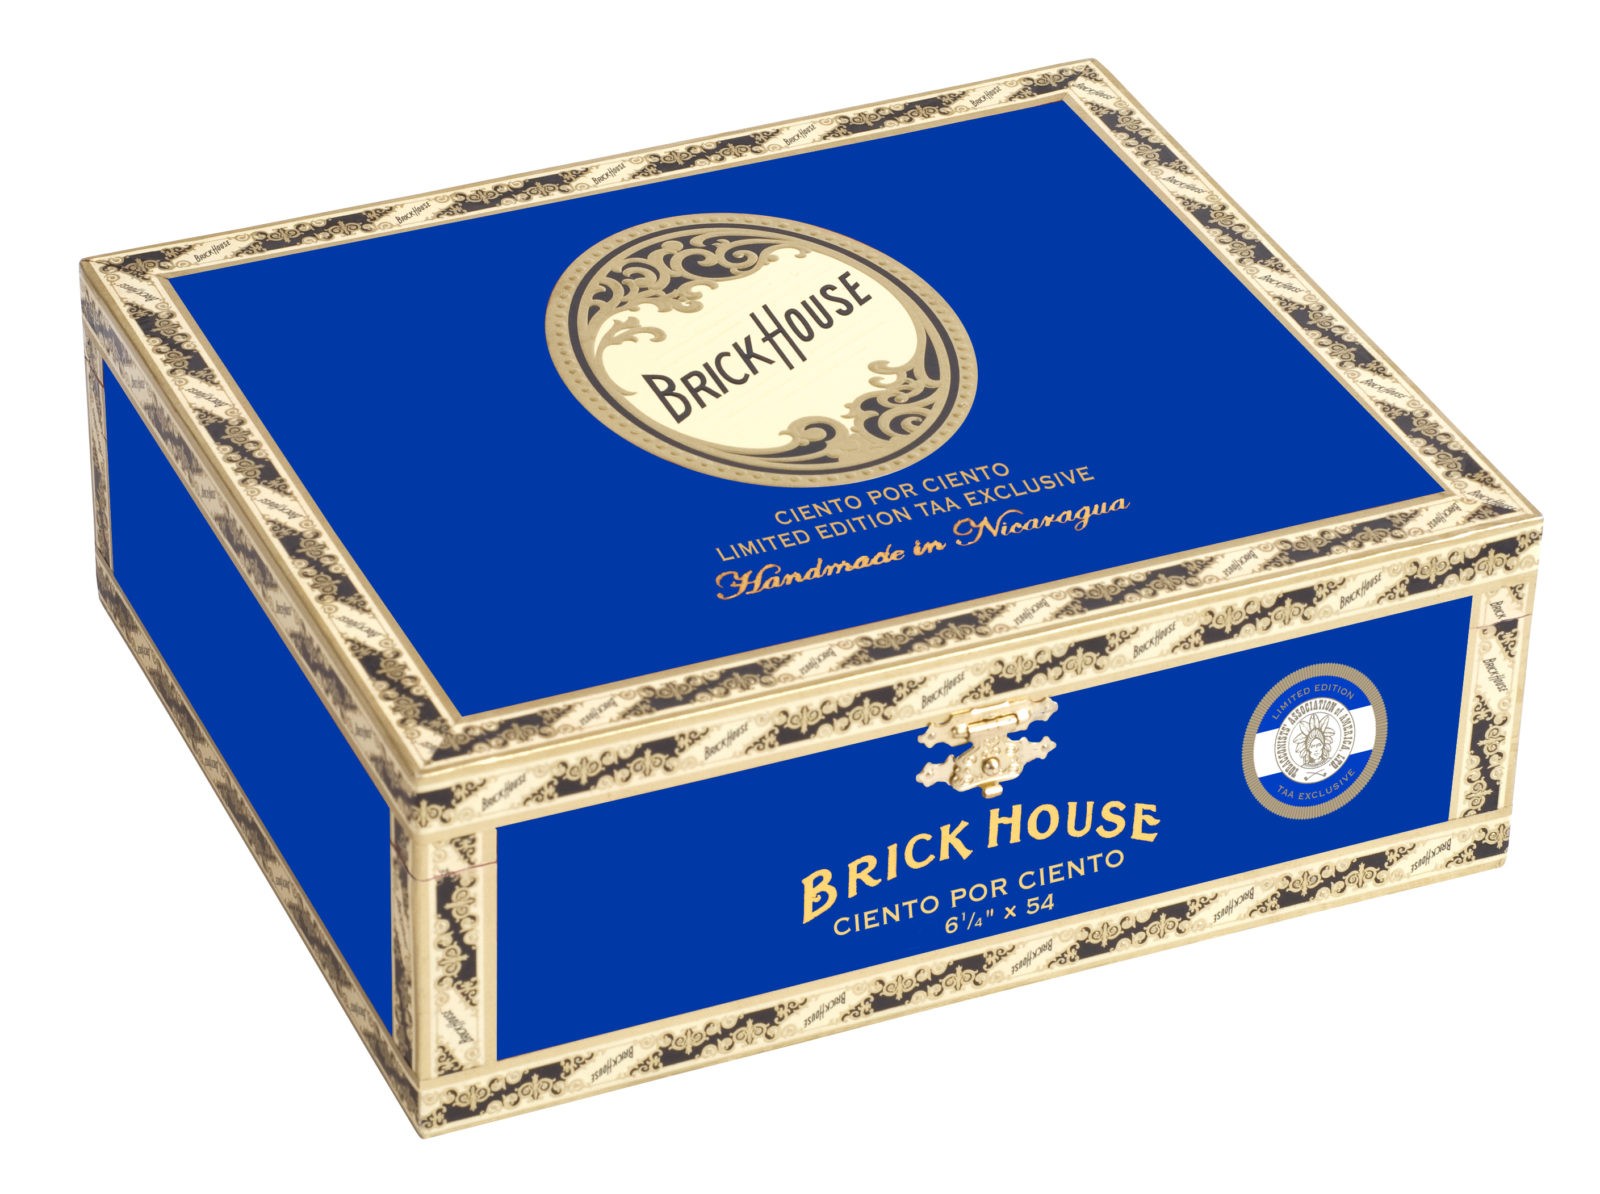 Brick House Ciento por Ciento Box